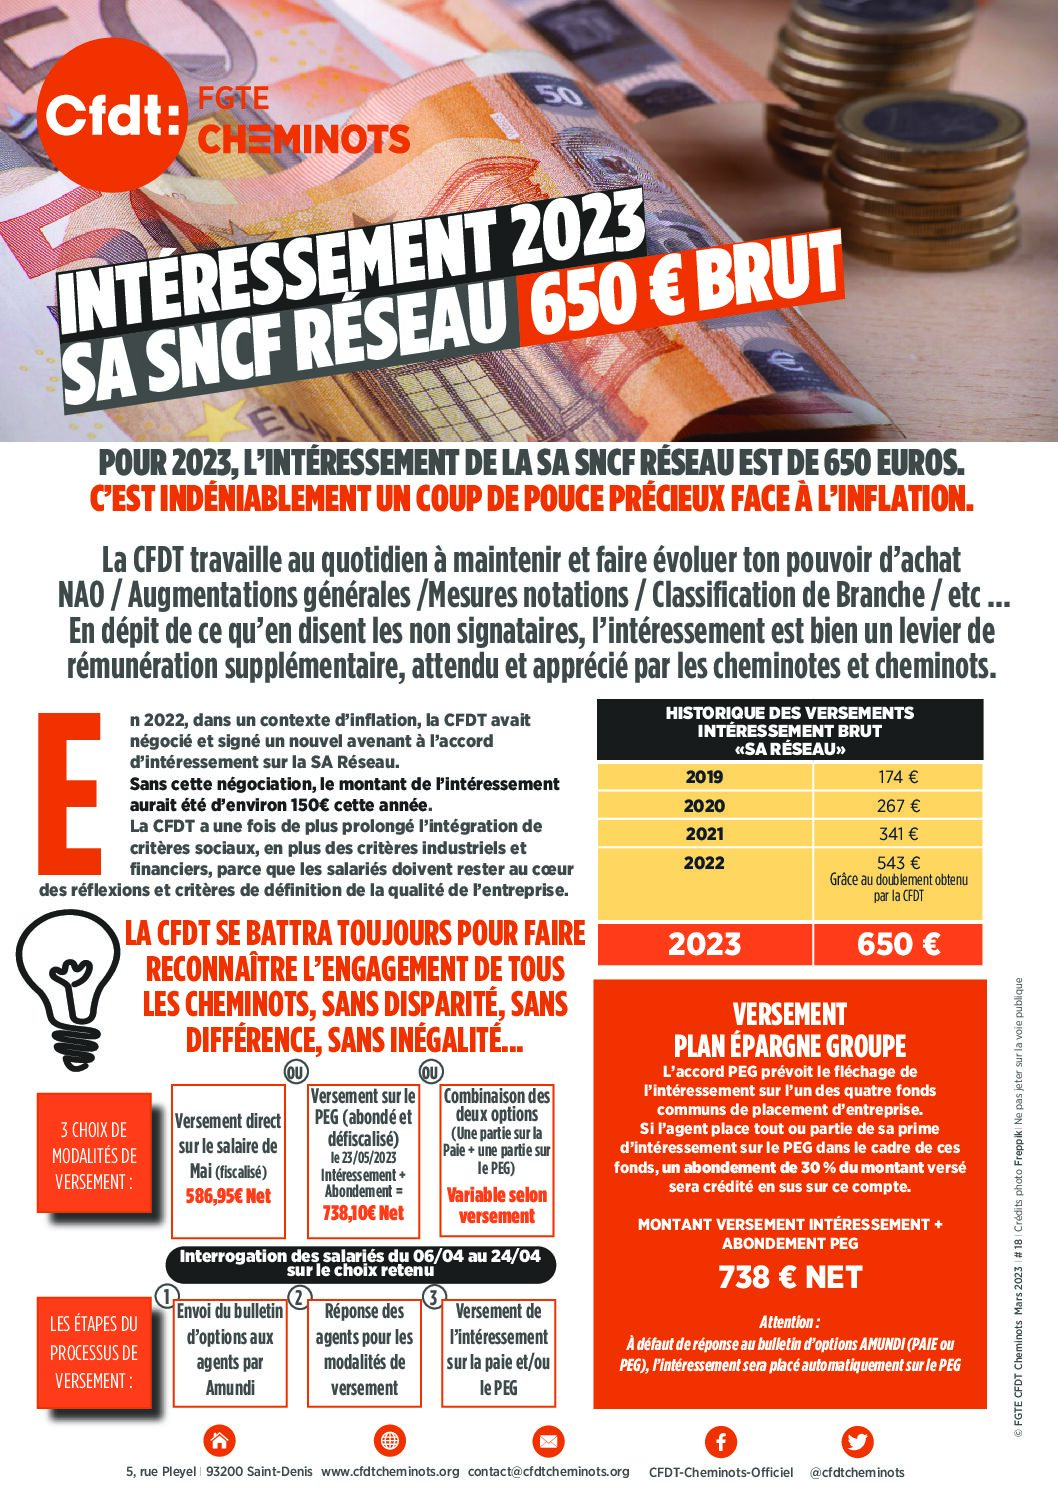 Intéressement 2023 : SA SNCF Réseau